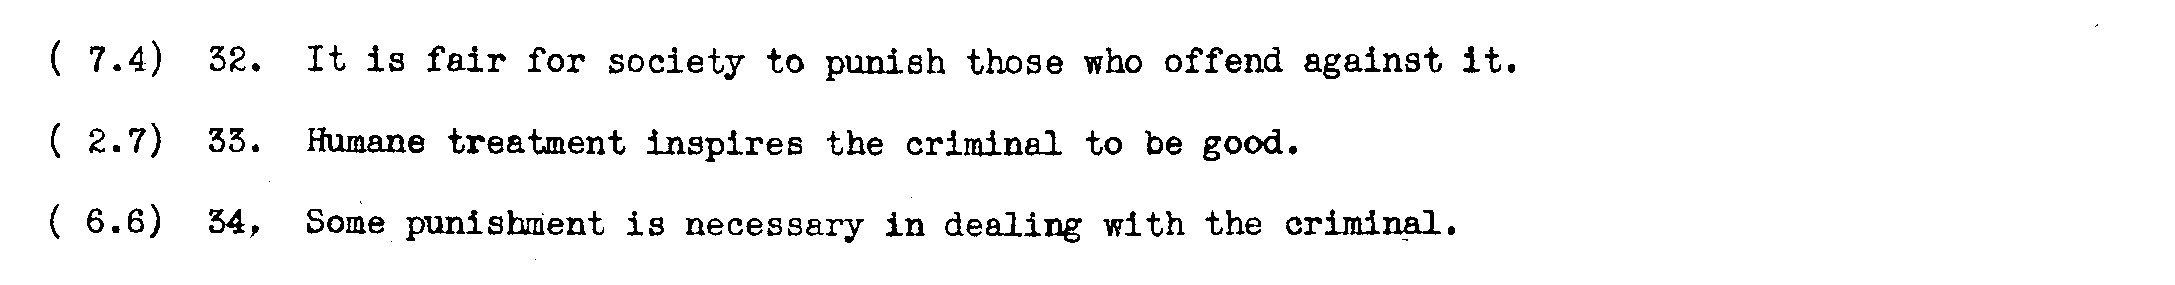 Attitude toward Punishment of Criminals, part 3